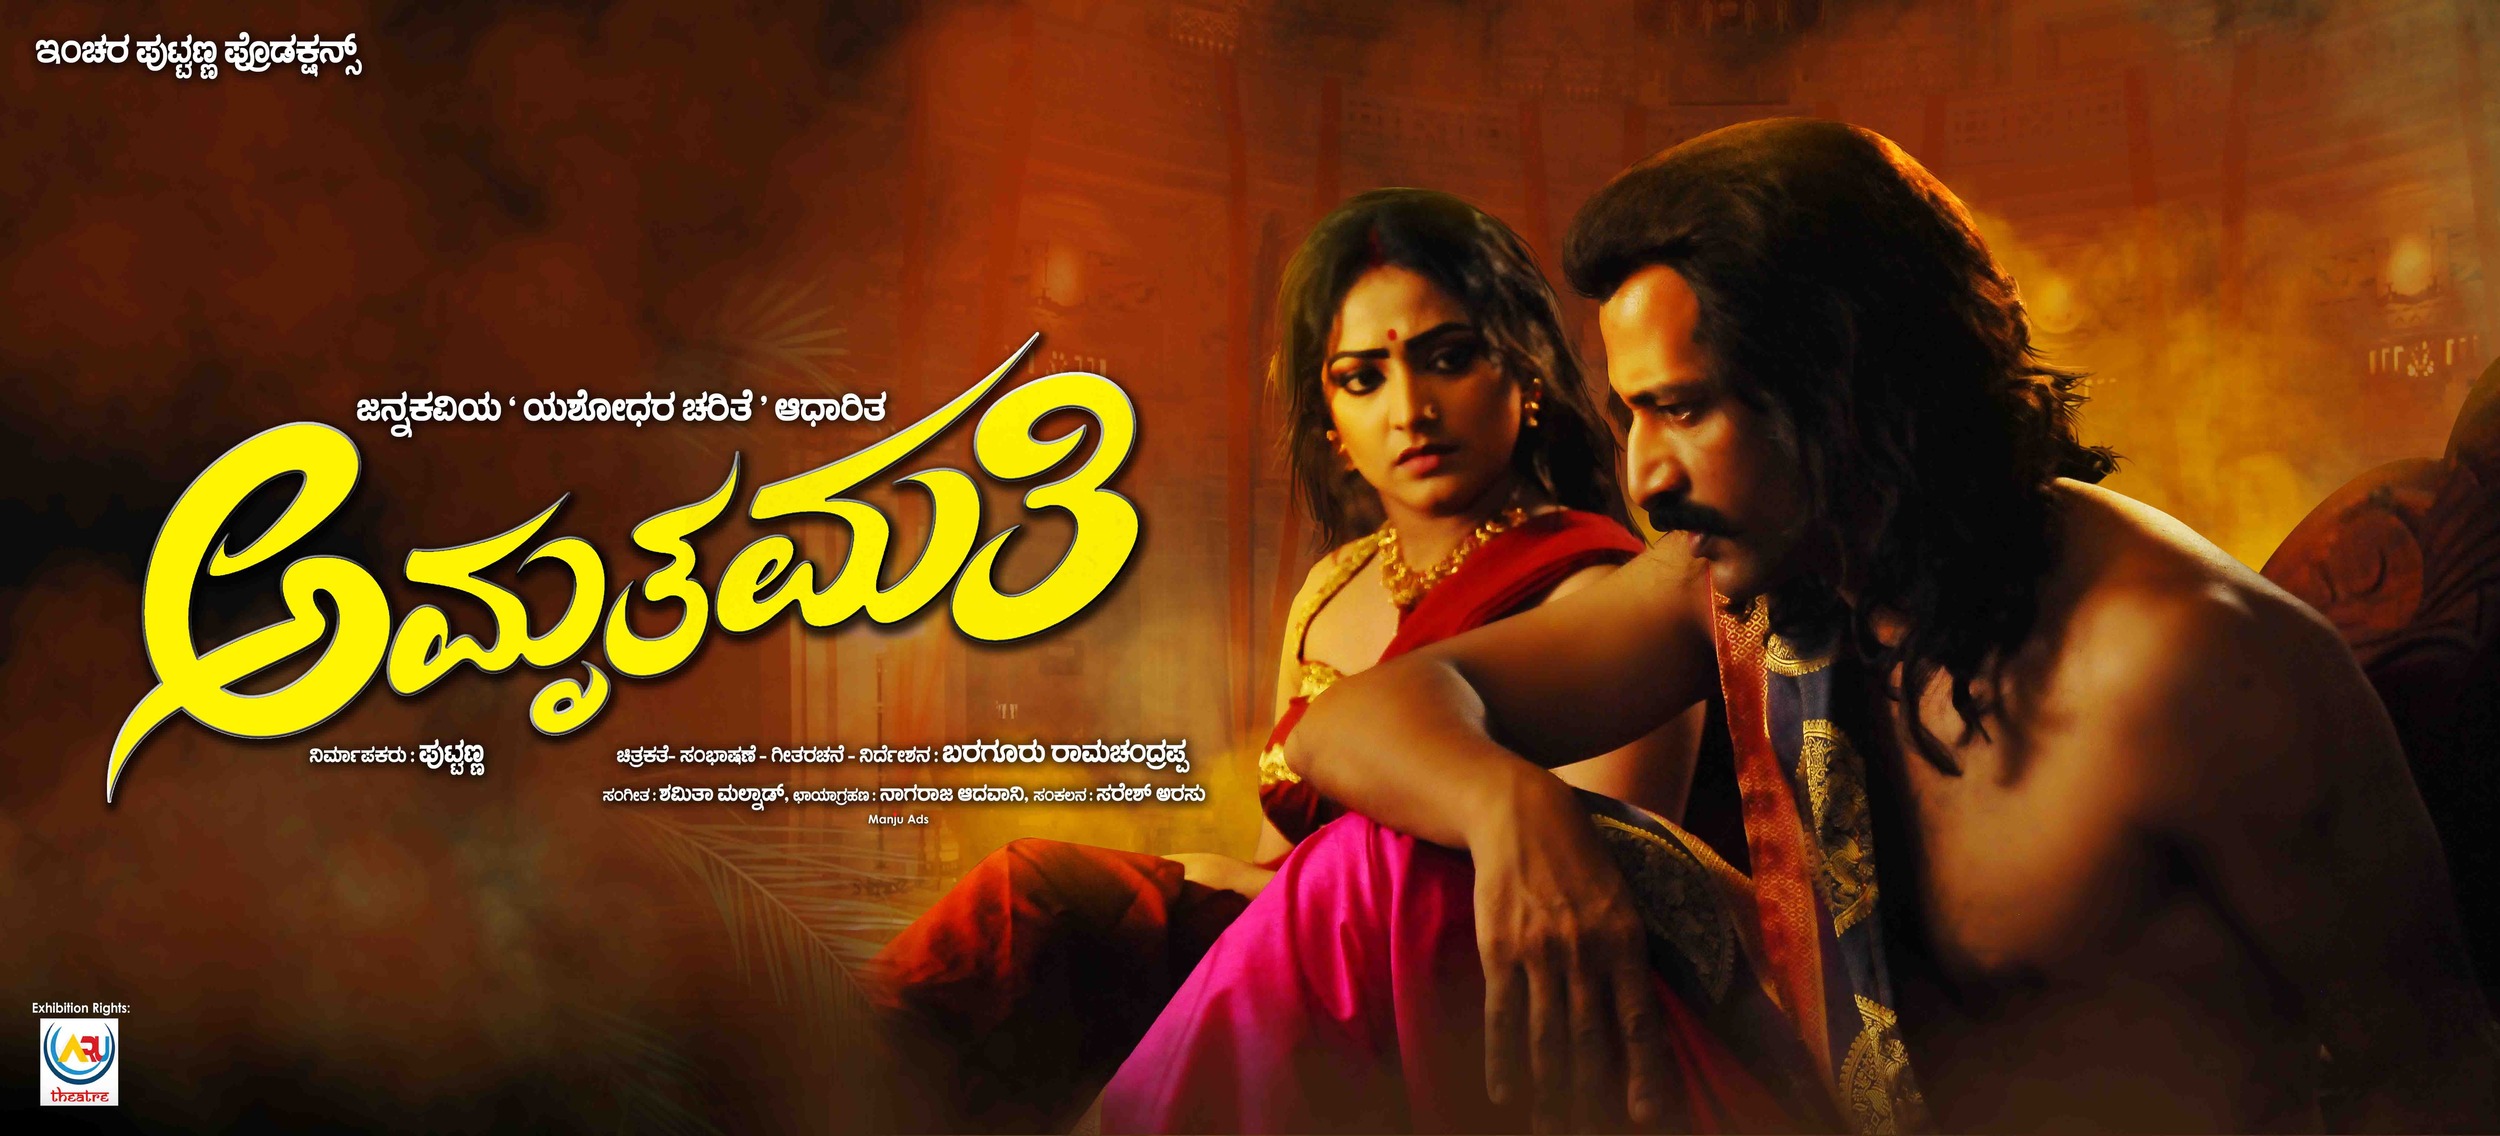 Mega Sized Movie Poster Image for Amruthamathi (#3 of 10)